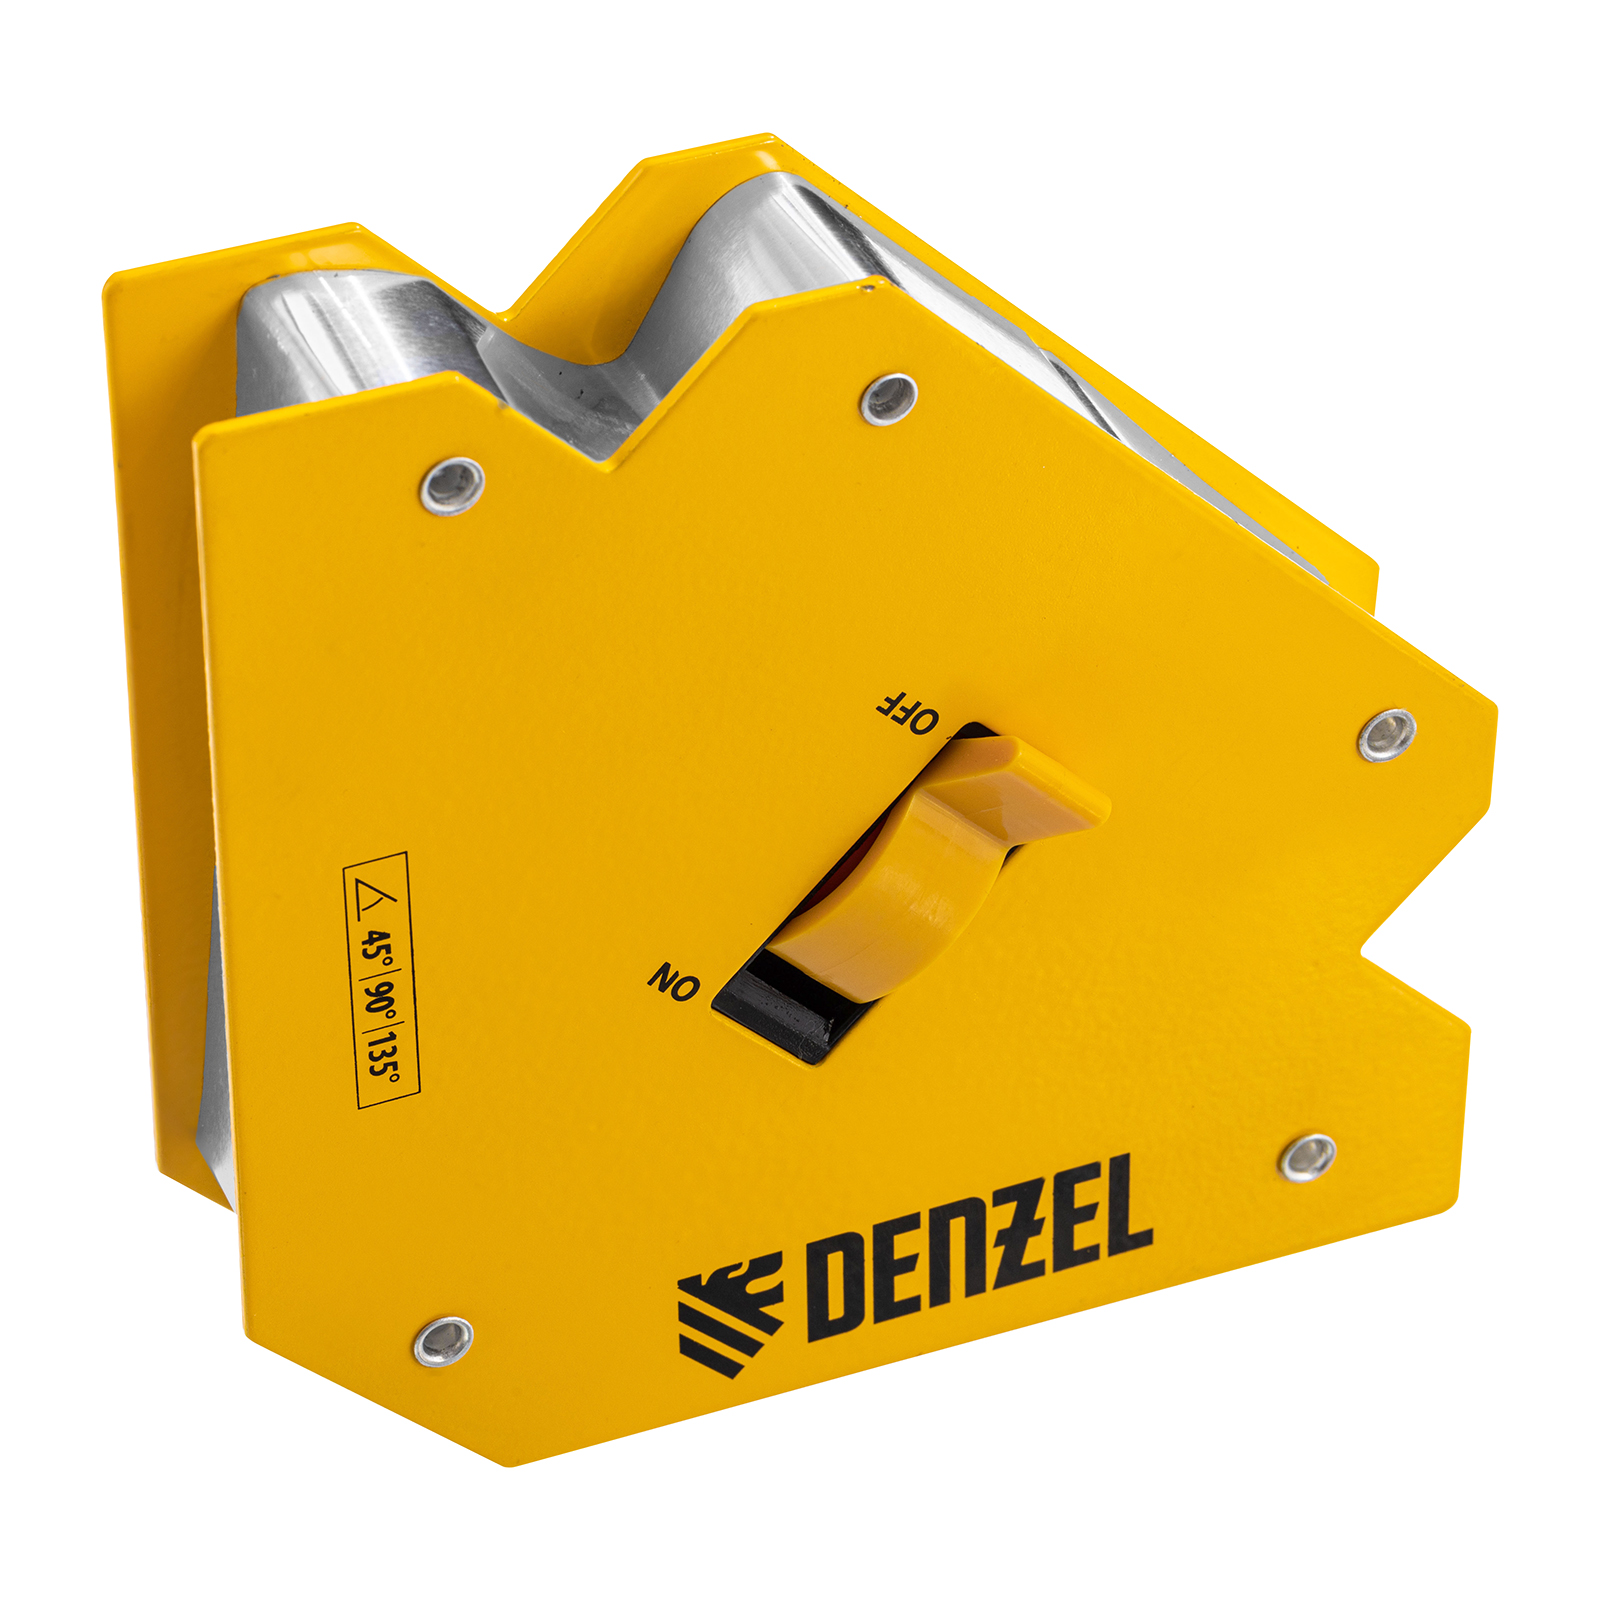 Фиксатор магнитный отключаемый для сварочных работ DENZEL усилие 55 LB, 45х90х135 гр 97564 фиксатор магнитный отключаемый для сварочных работ denzel усилие 30 lb 45х90х135 гр 97563